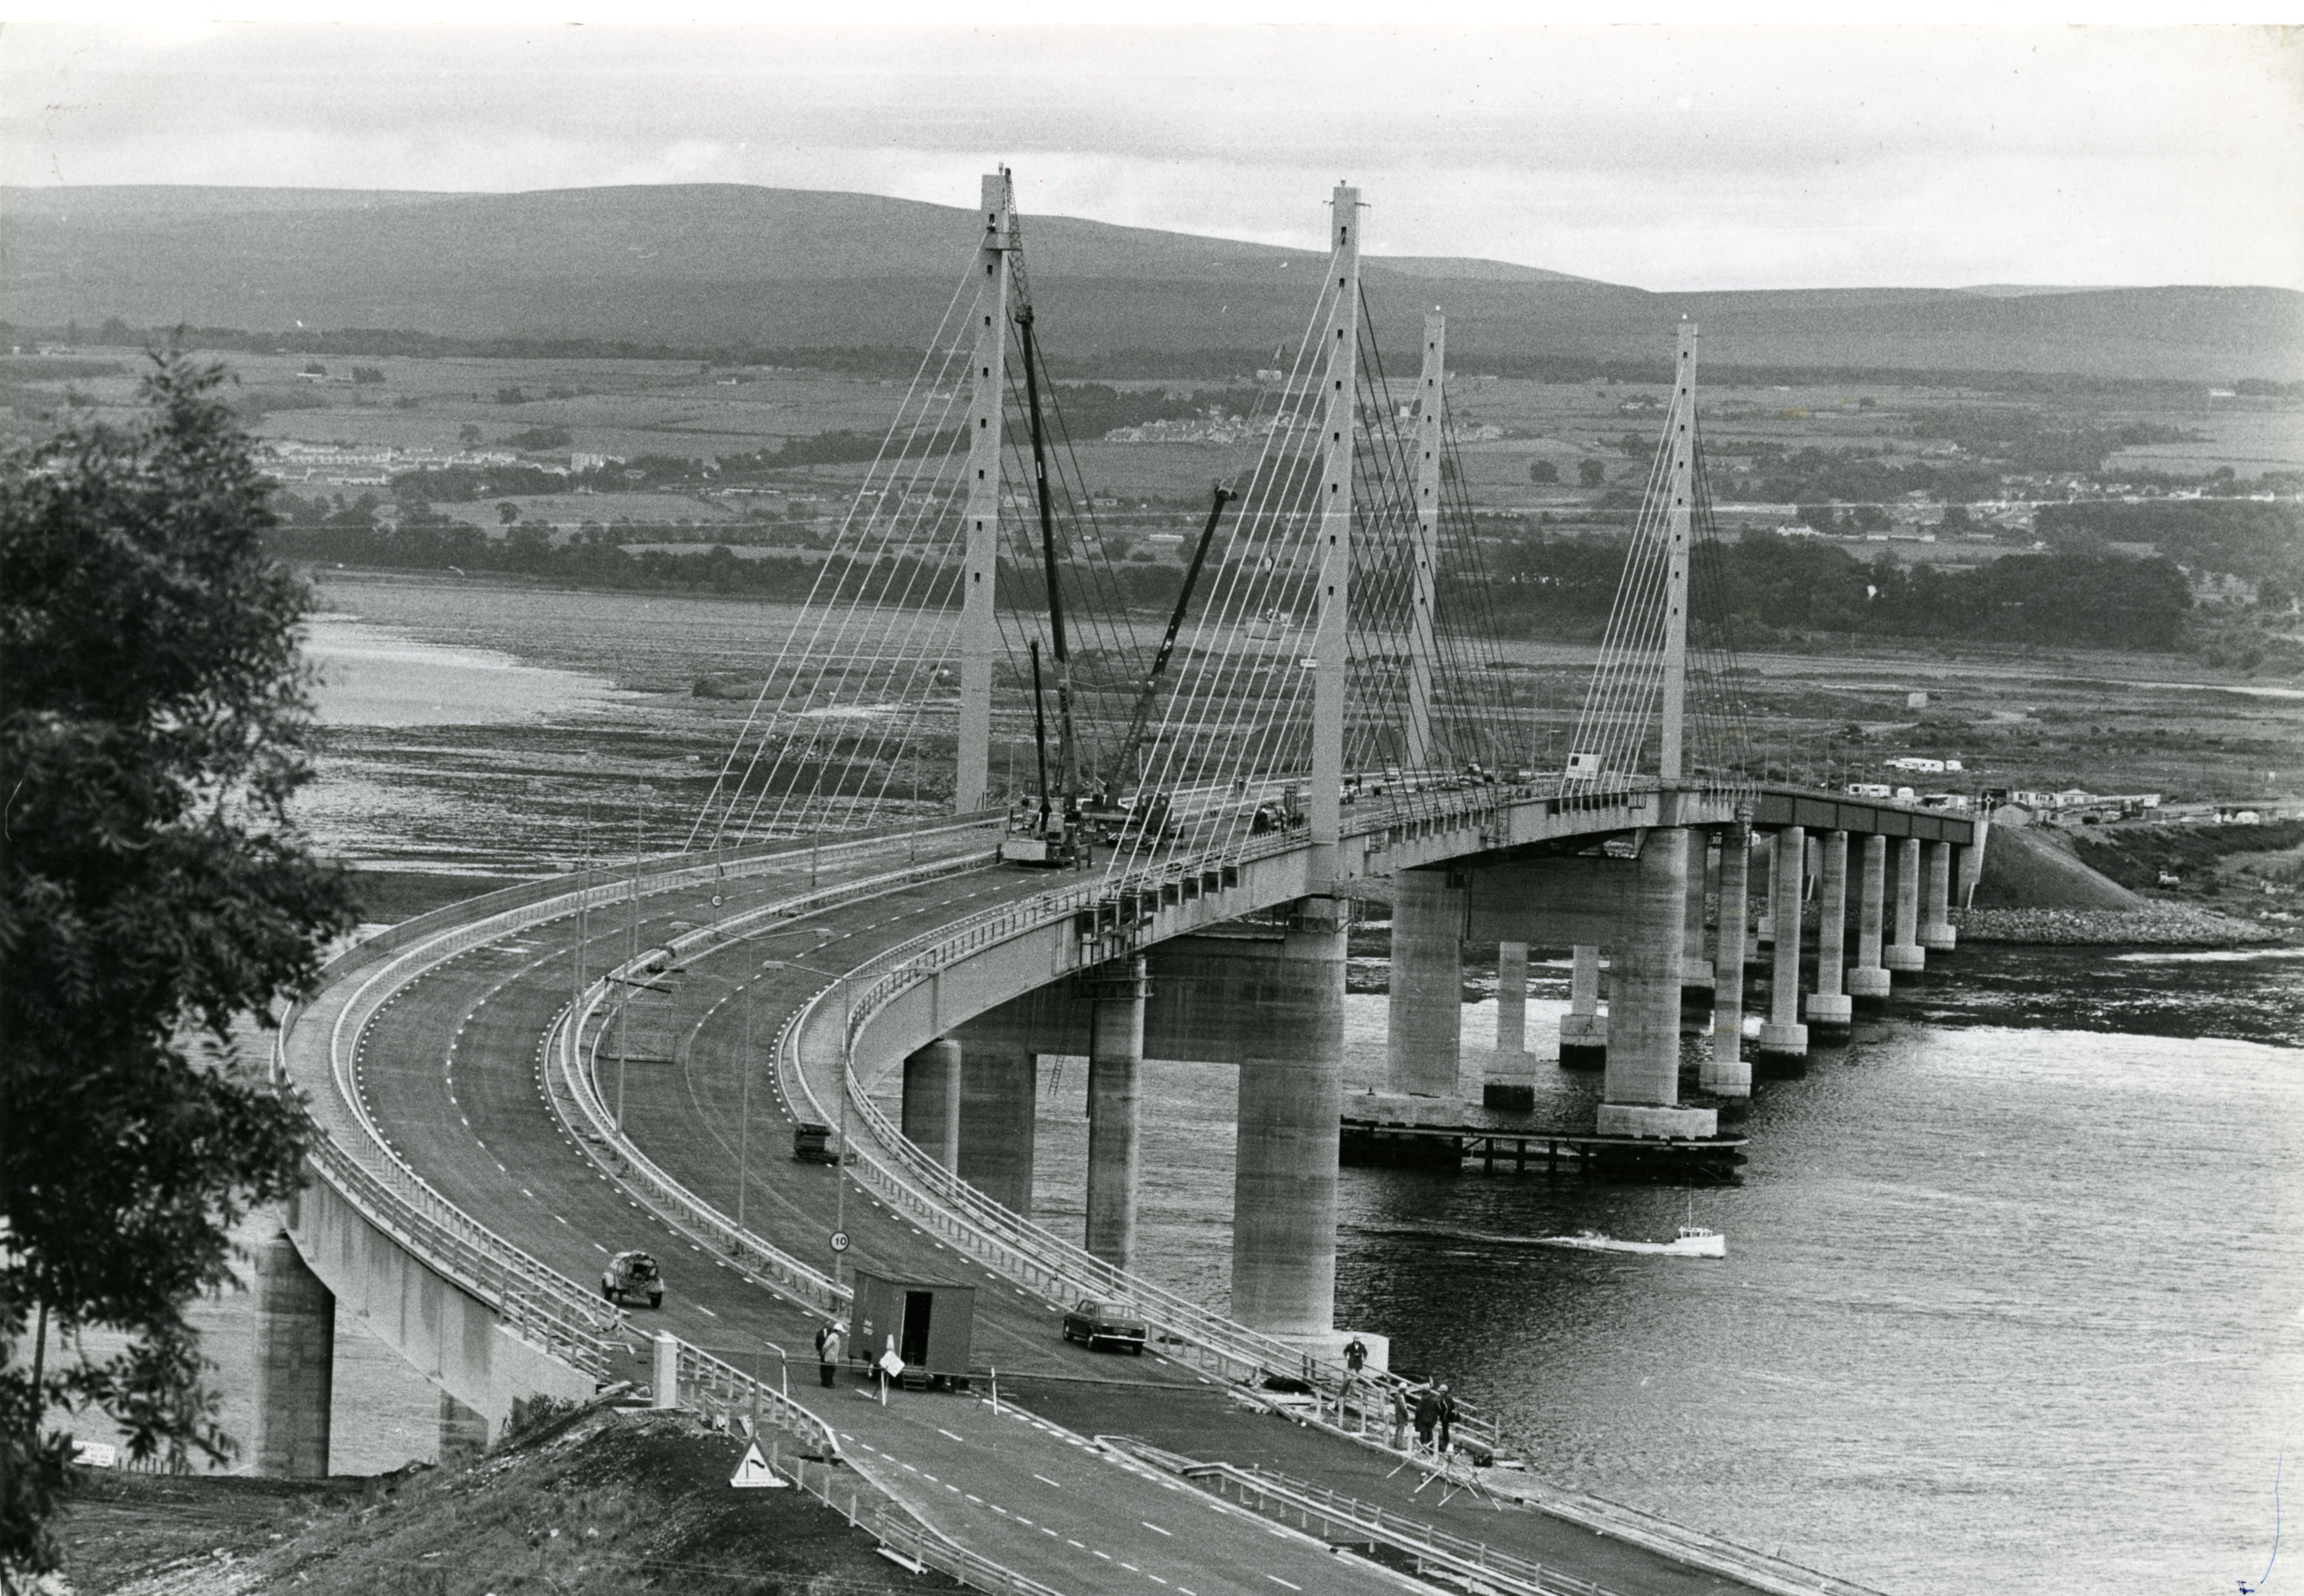 The Kessock Bridge in 1982